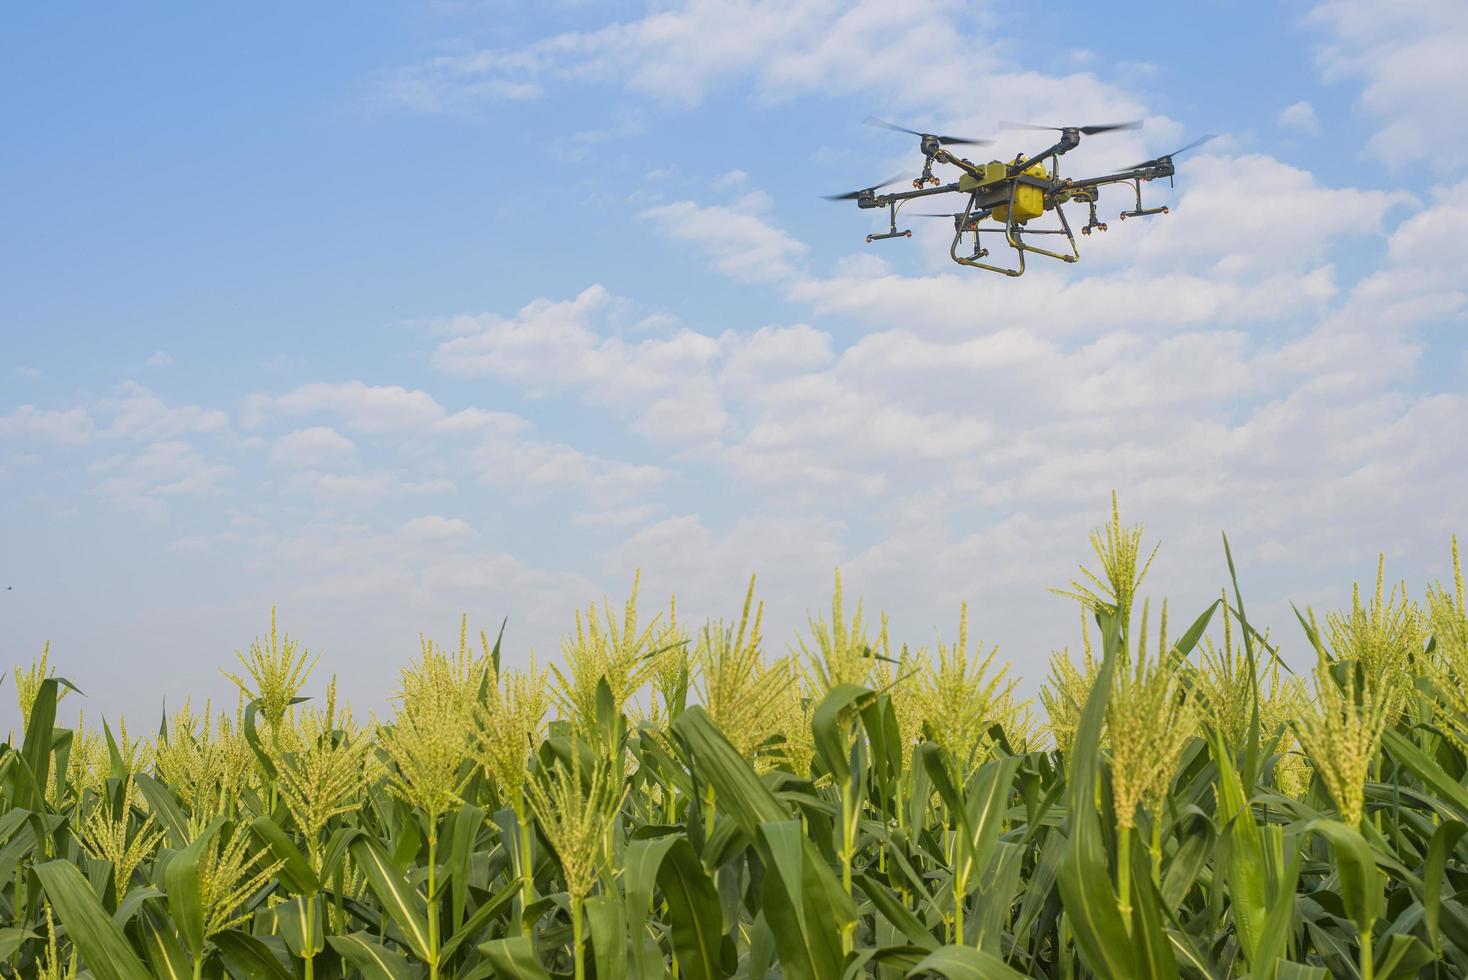 drone agrícola voando e pulverizando fertilizantes e pesticidas sobre terras agrícolas, inovações de alta tecnologia e agricultura inteligente foto